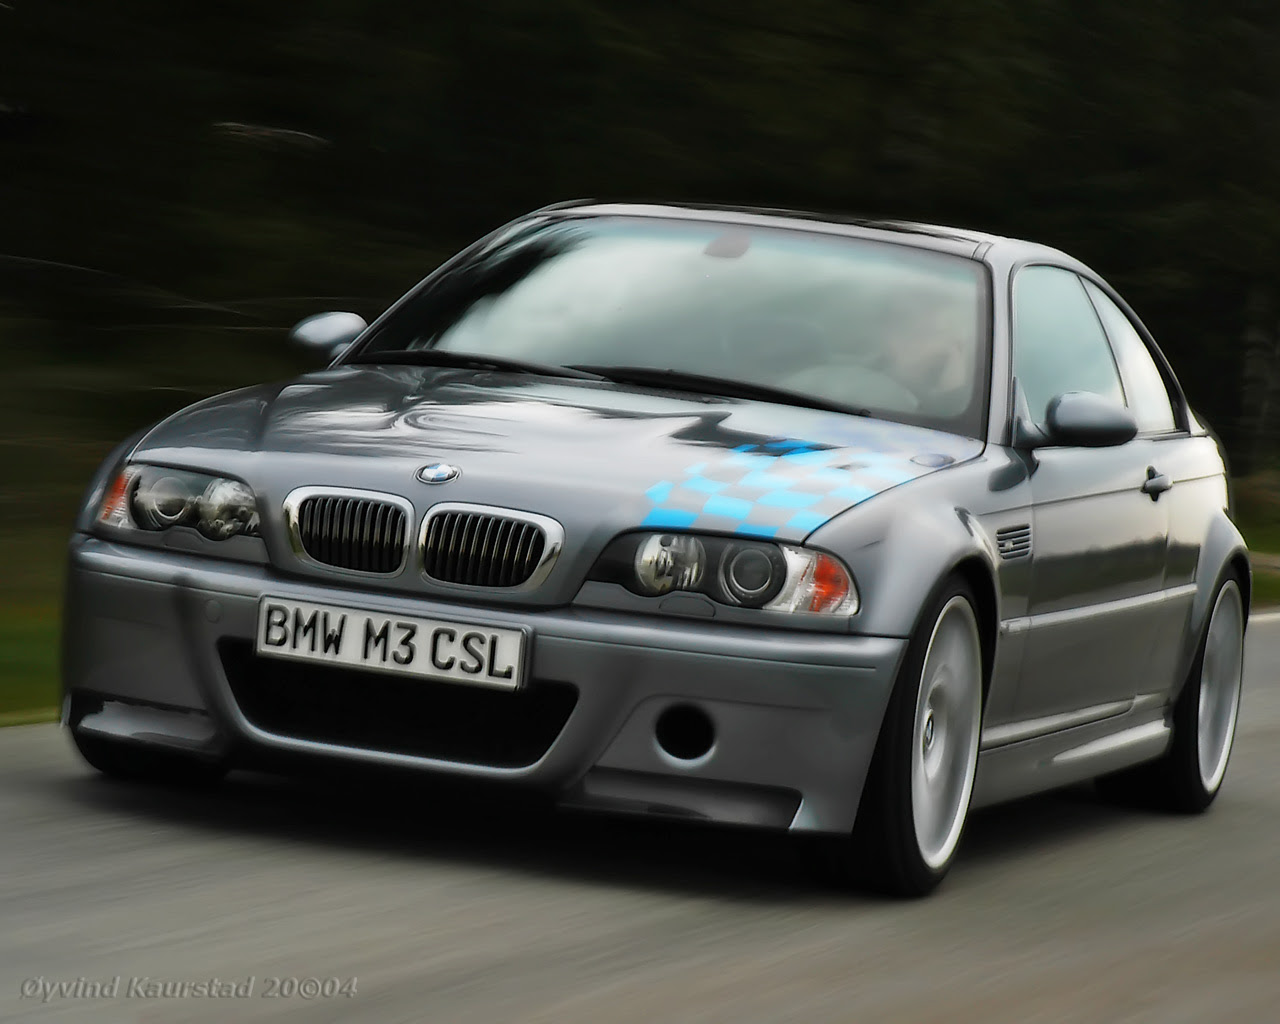 BMW M3 CSL Wallpaper